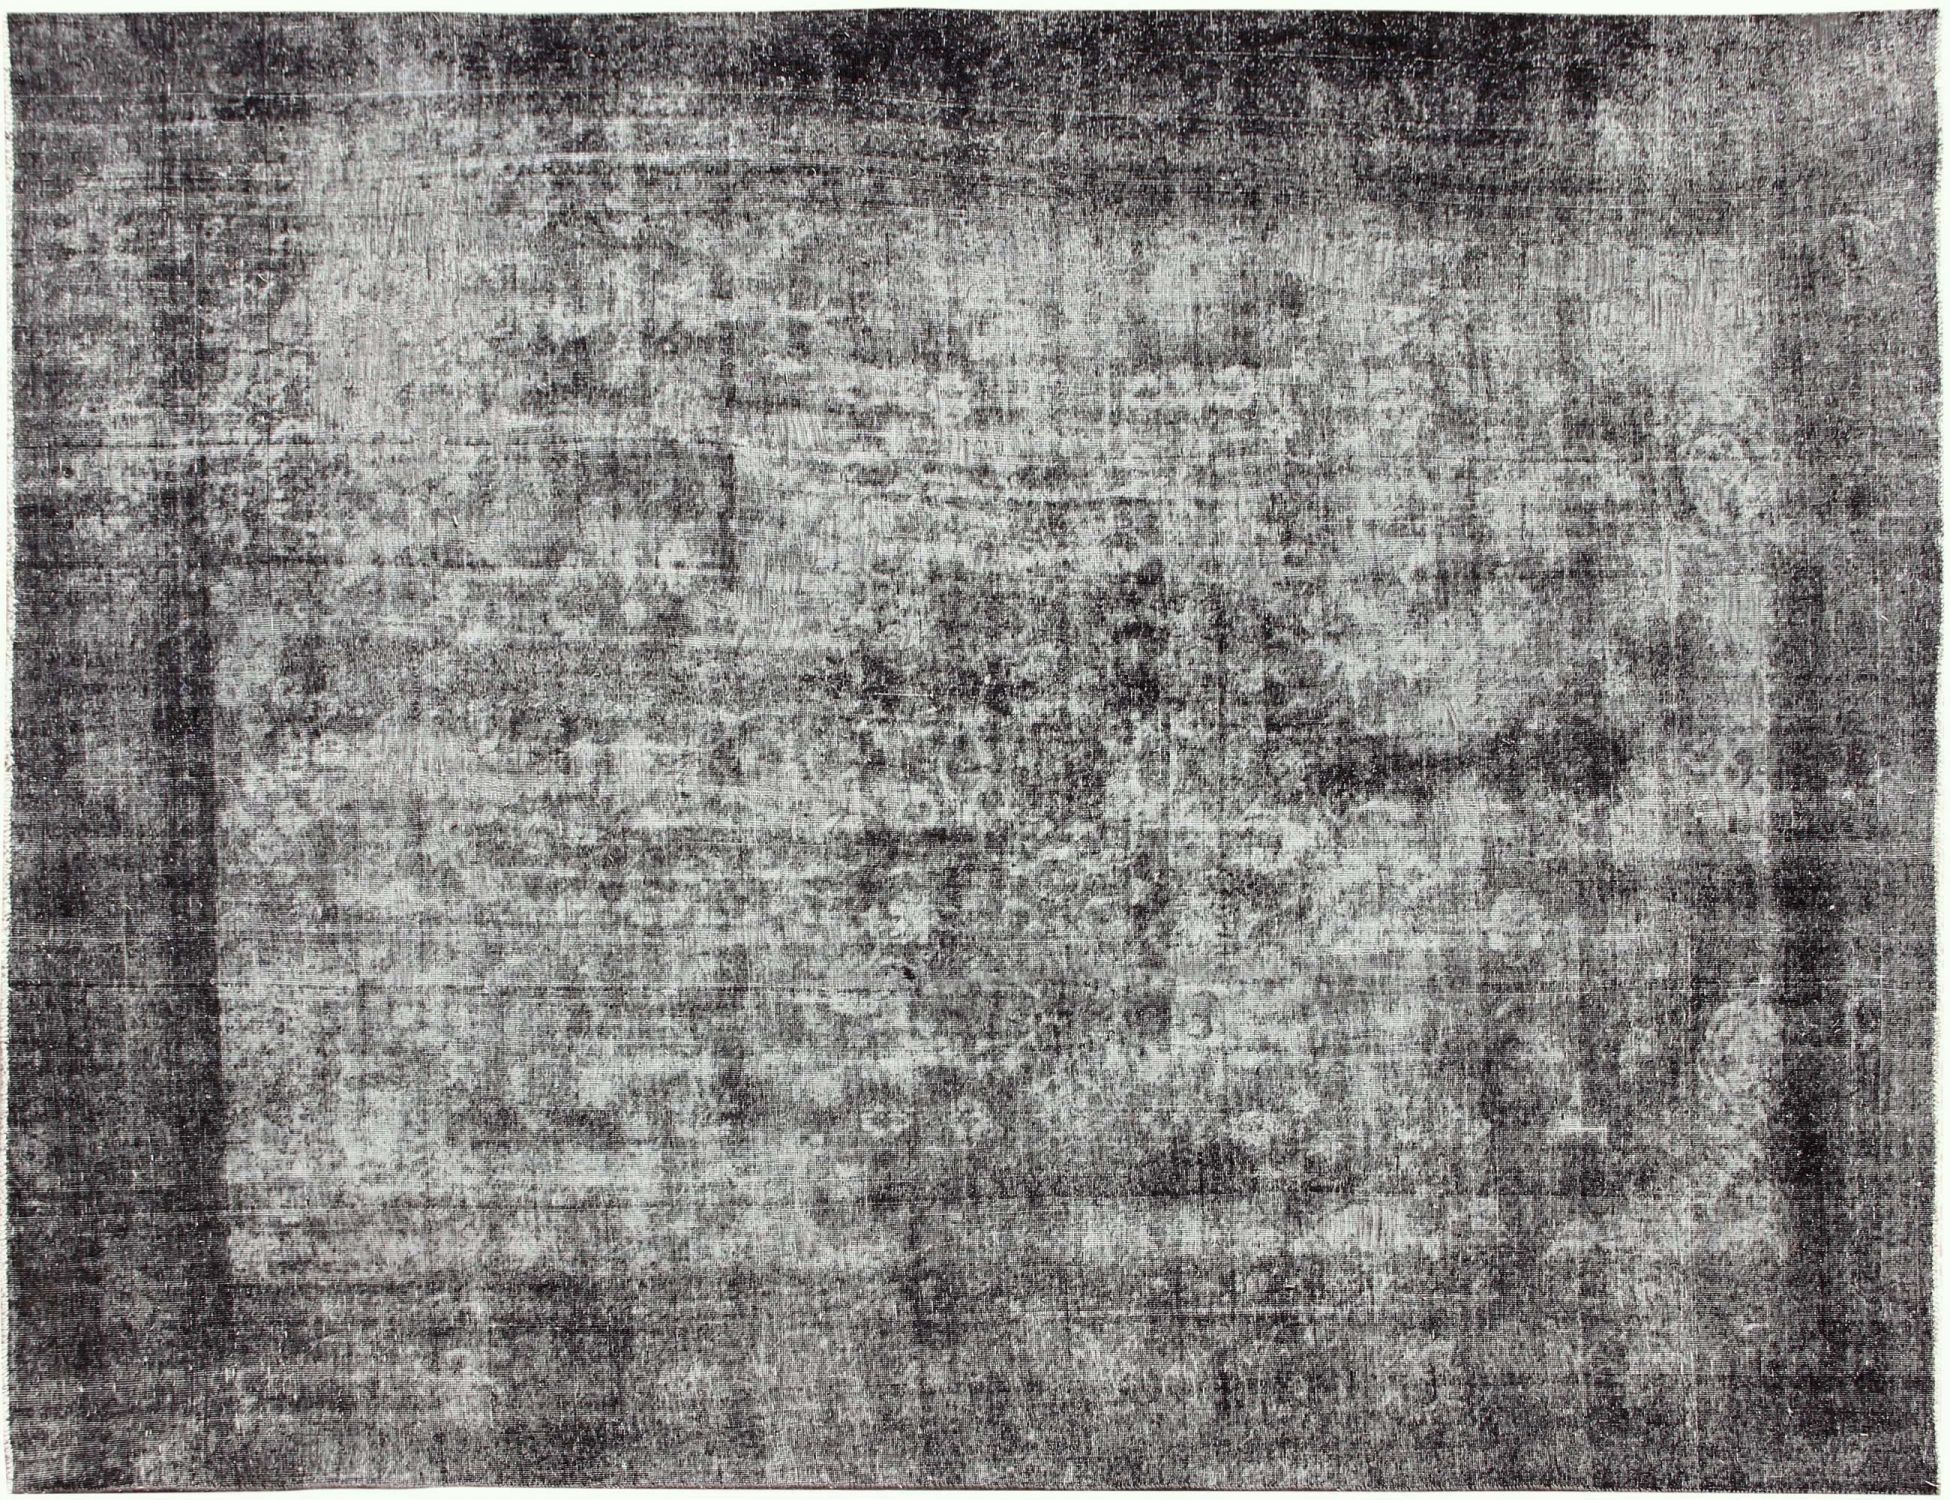 Persischer Vintage Teppich  grau <br/>367 x 260 cm